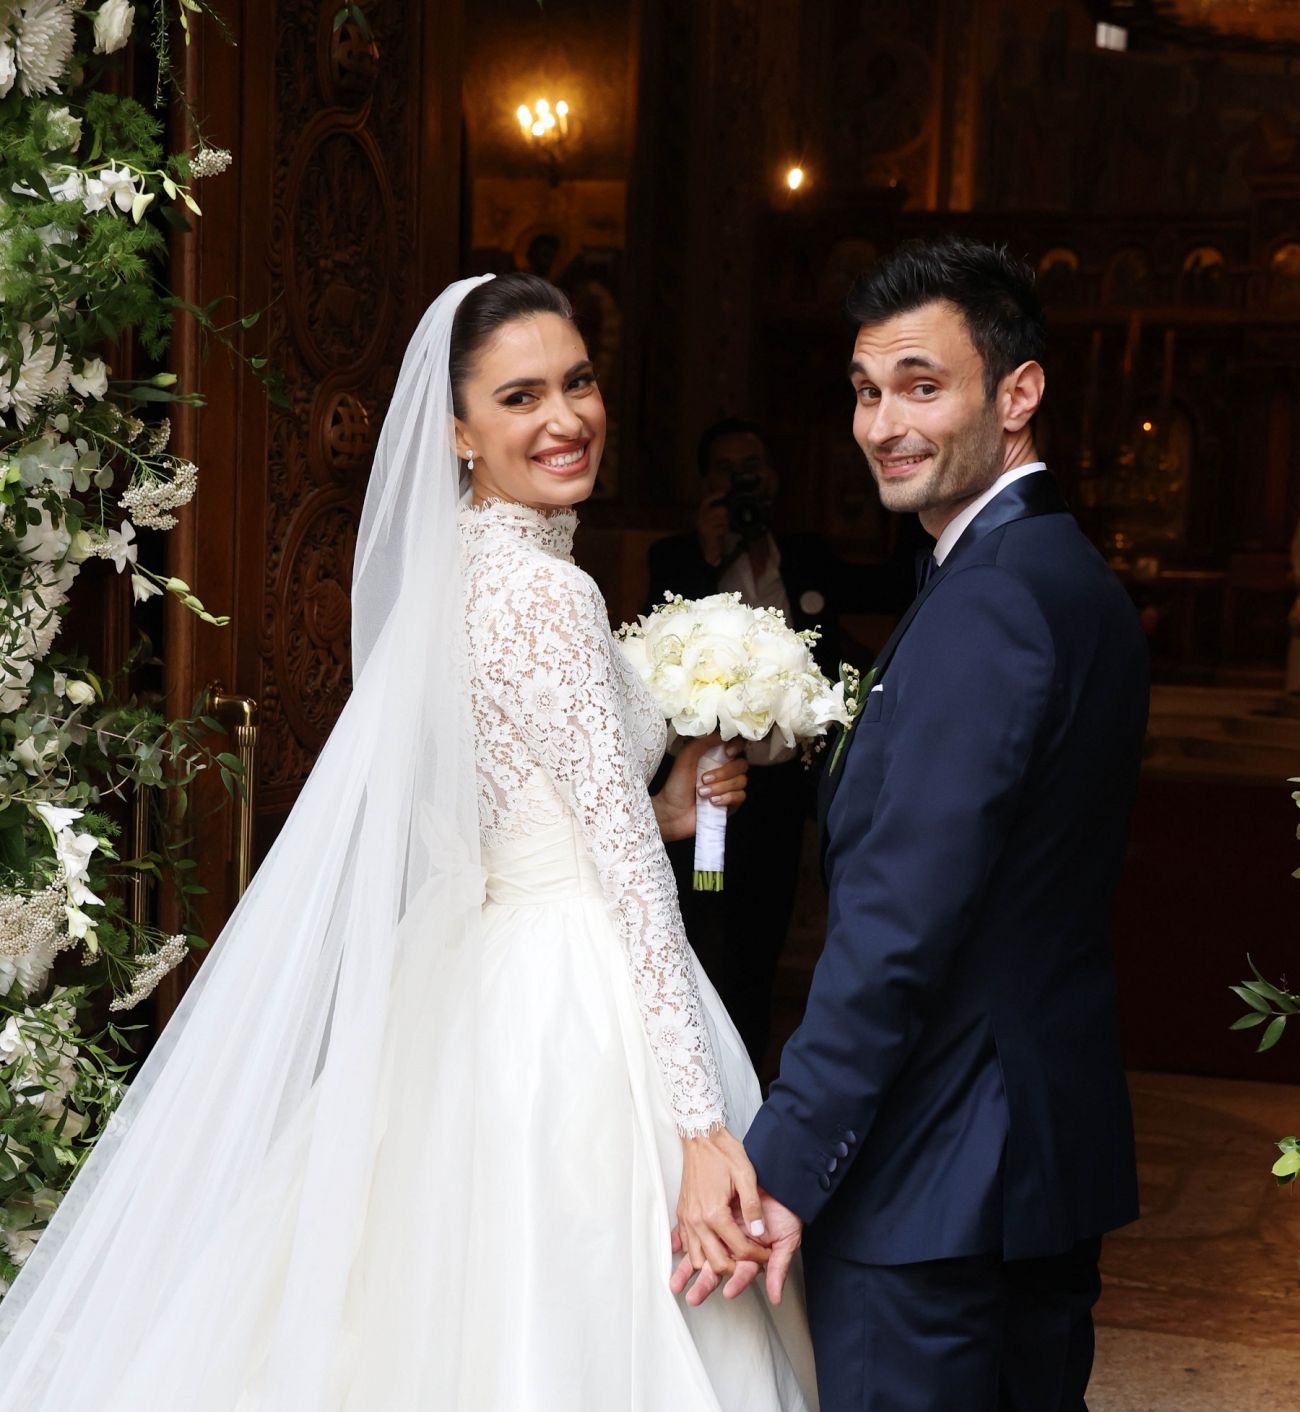 Άννα Πρέλεβιτς & Νικήτας Νομικός: Ο γάμος του αδερφού της Δούκισσας και ο τραγουδιστής - έκπληξη